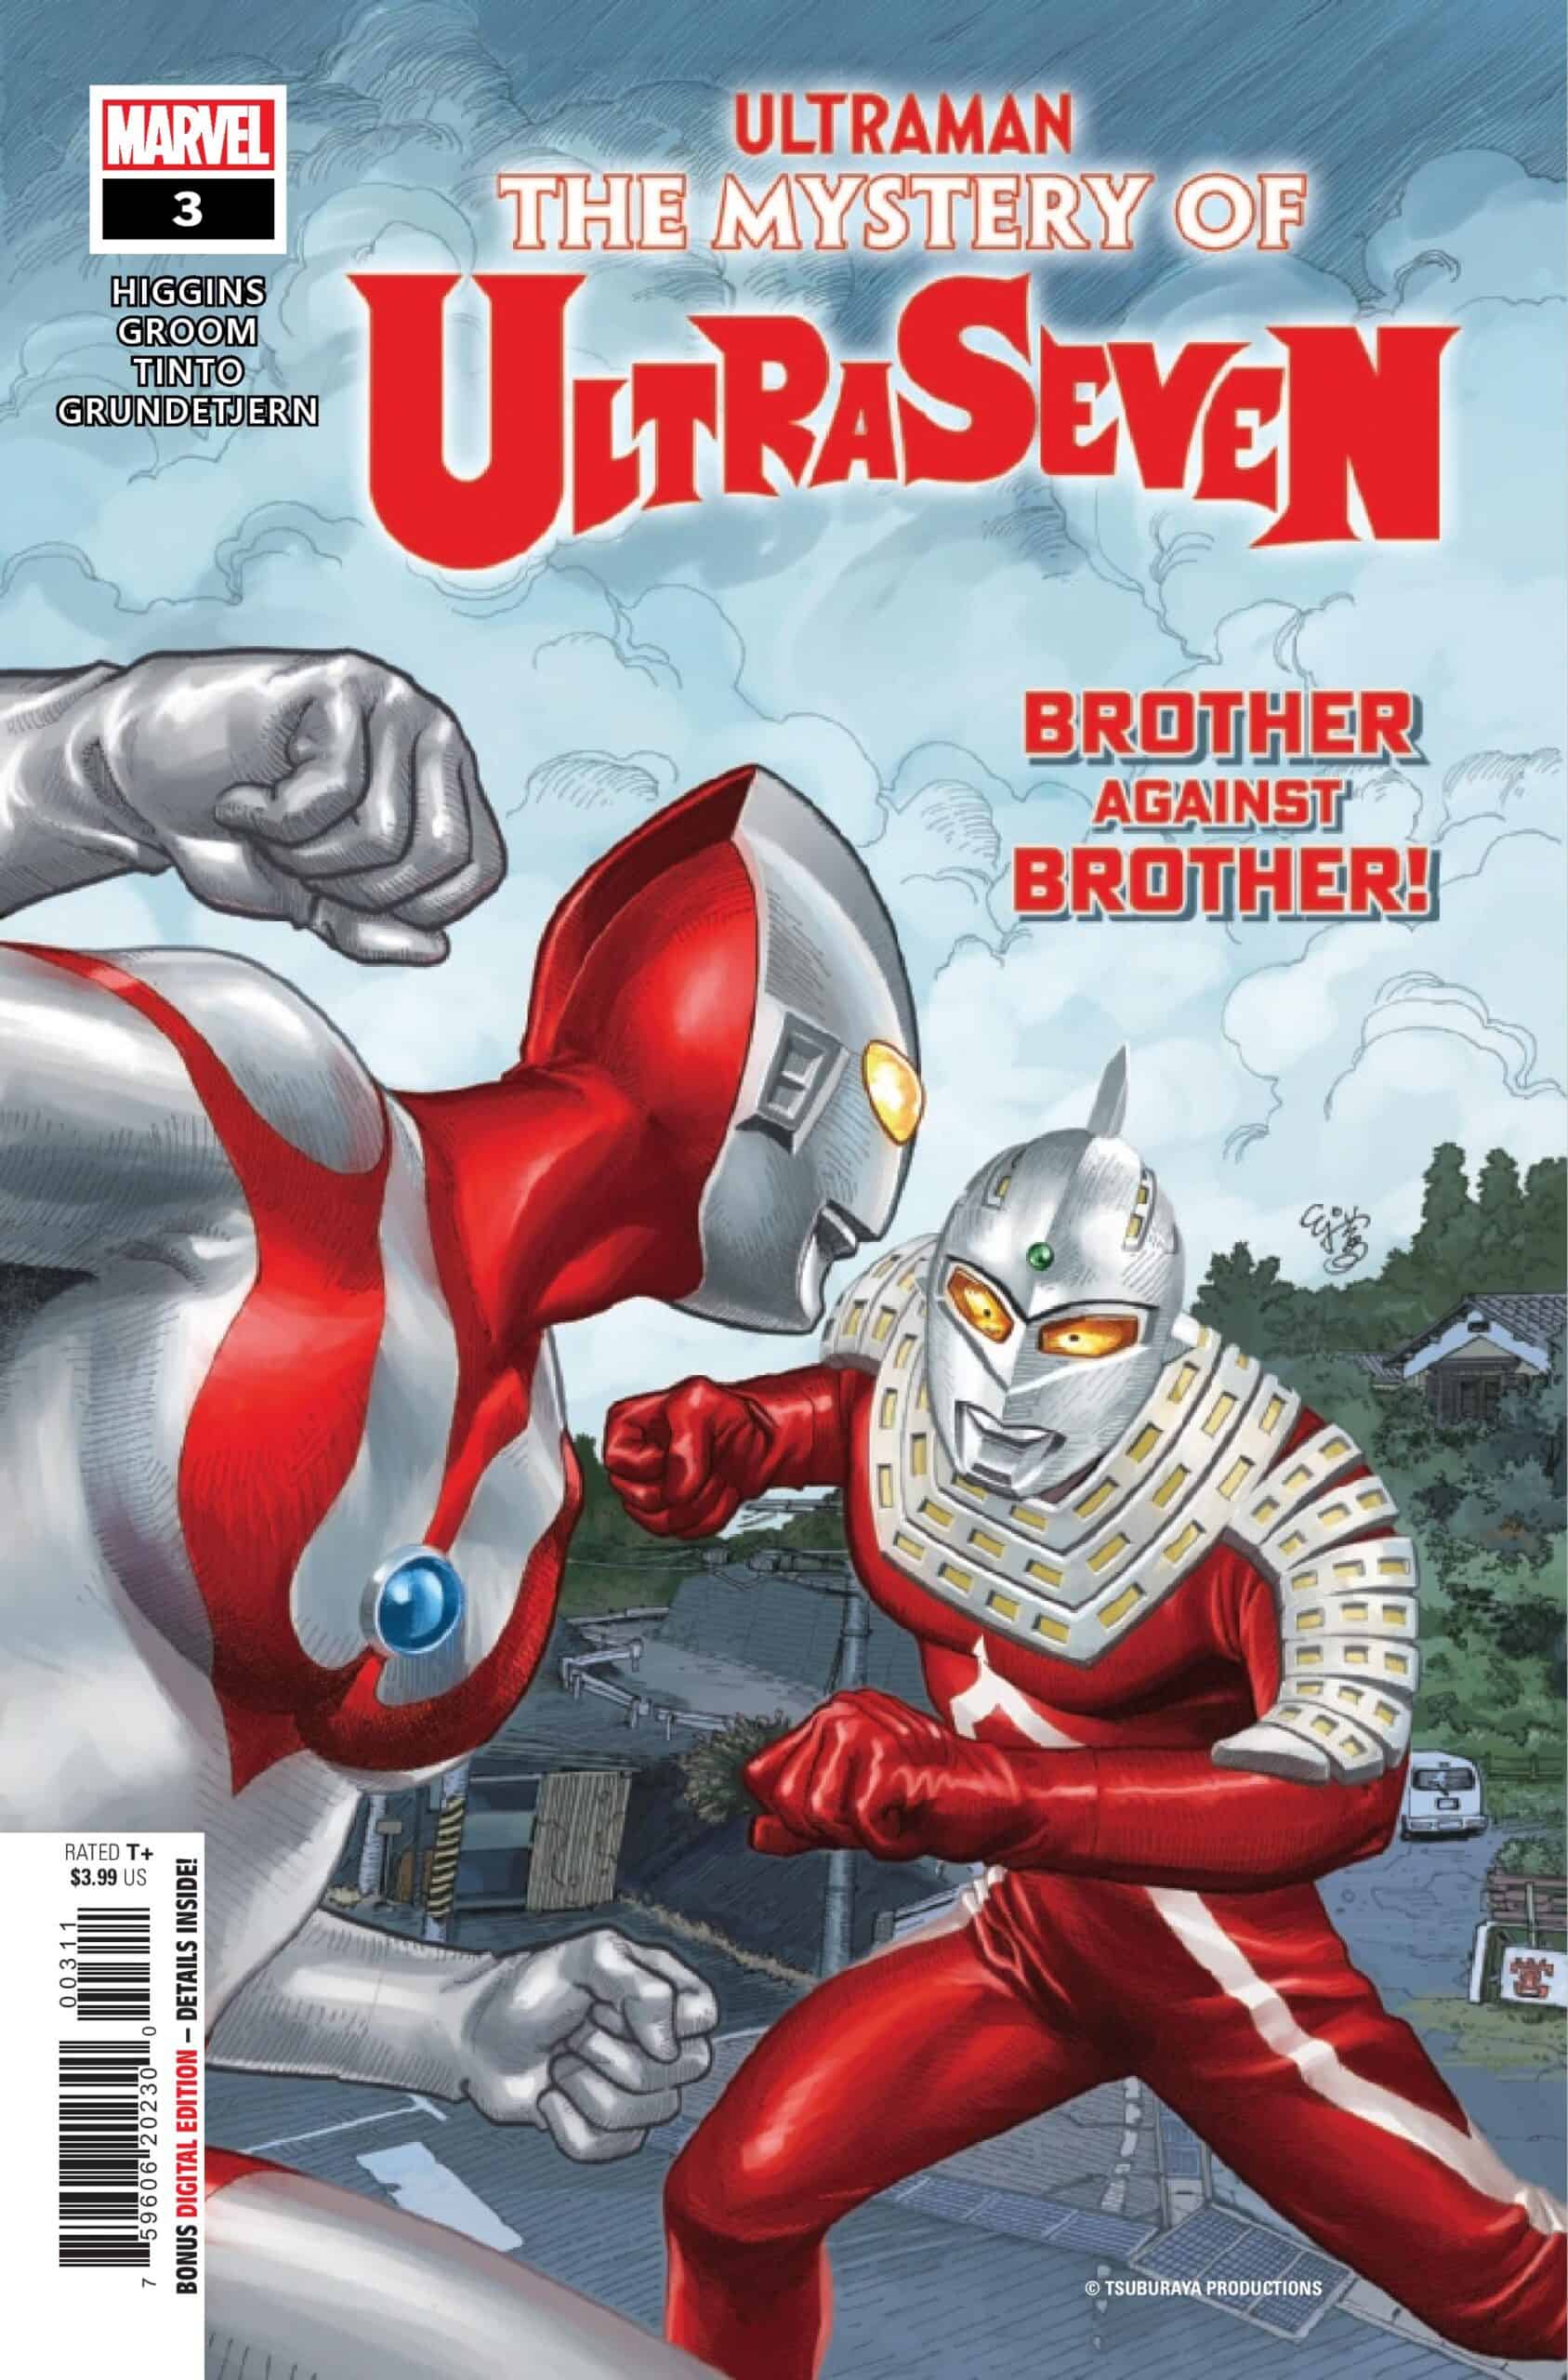 SNEAK PEEK: Preview of Marvel's ULTRAMAN: THE MYSTERY OF ULTRASEVEN #3 (On  Sale 10/26!) - Comic Watch